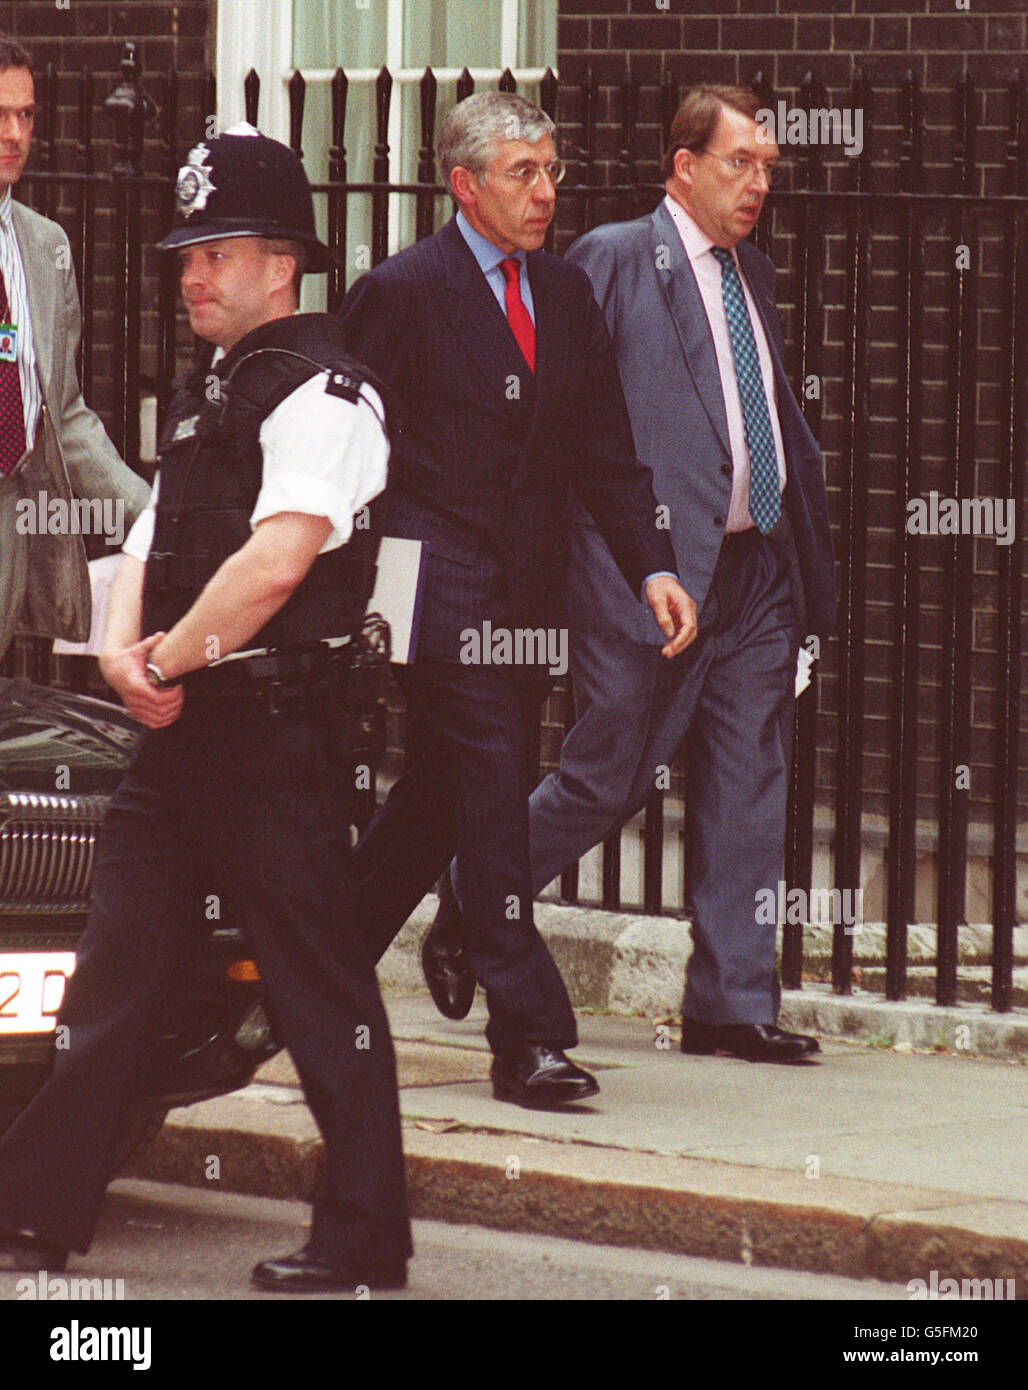 Il Ministro degli Esteri britannico, Jack Straw (al centro) arriva a 10 Downing Street, Londra, dopo la notizia che il World Trade Center di New York e il Pentagono di Washington sono stati entrambi colpiti da aerei in un attacco terroristico. Foto Stock